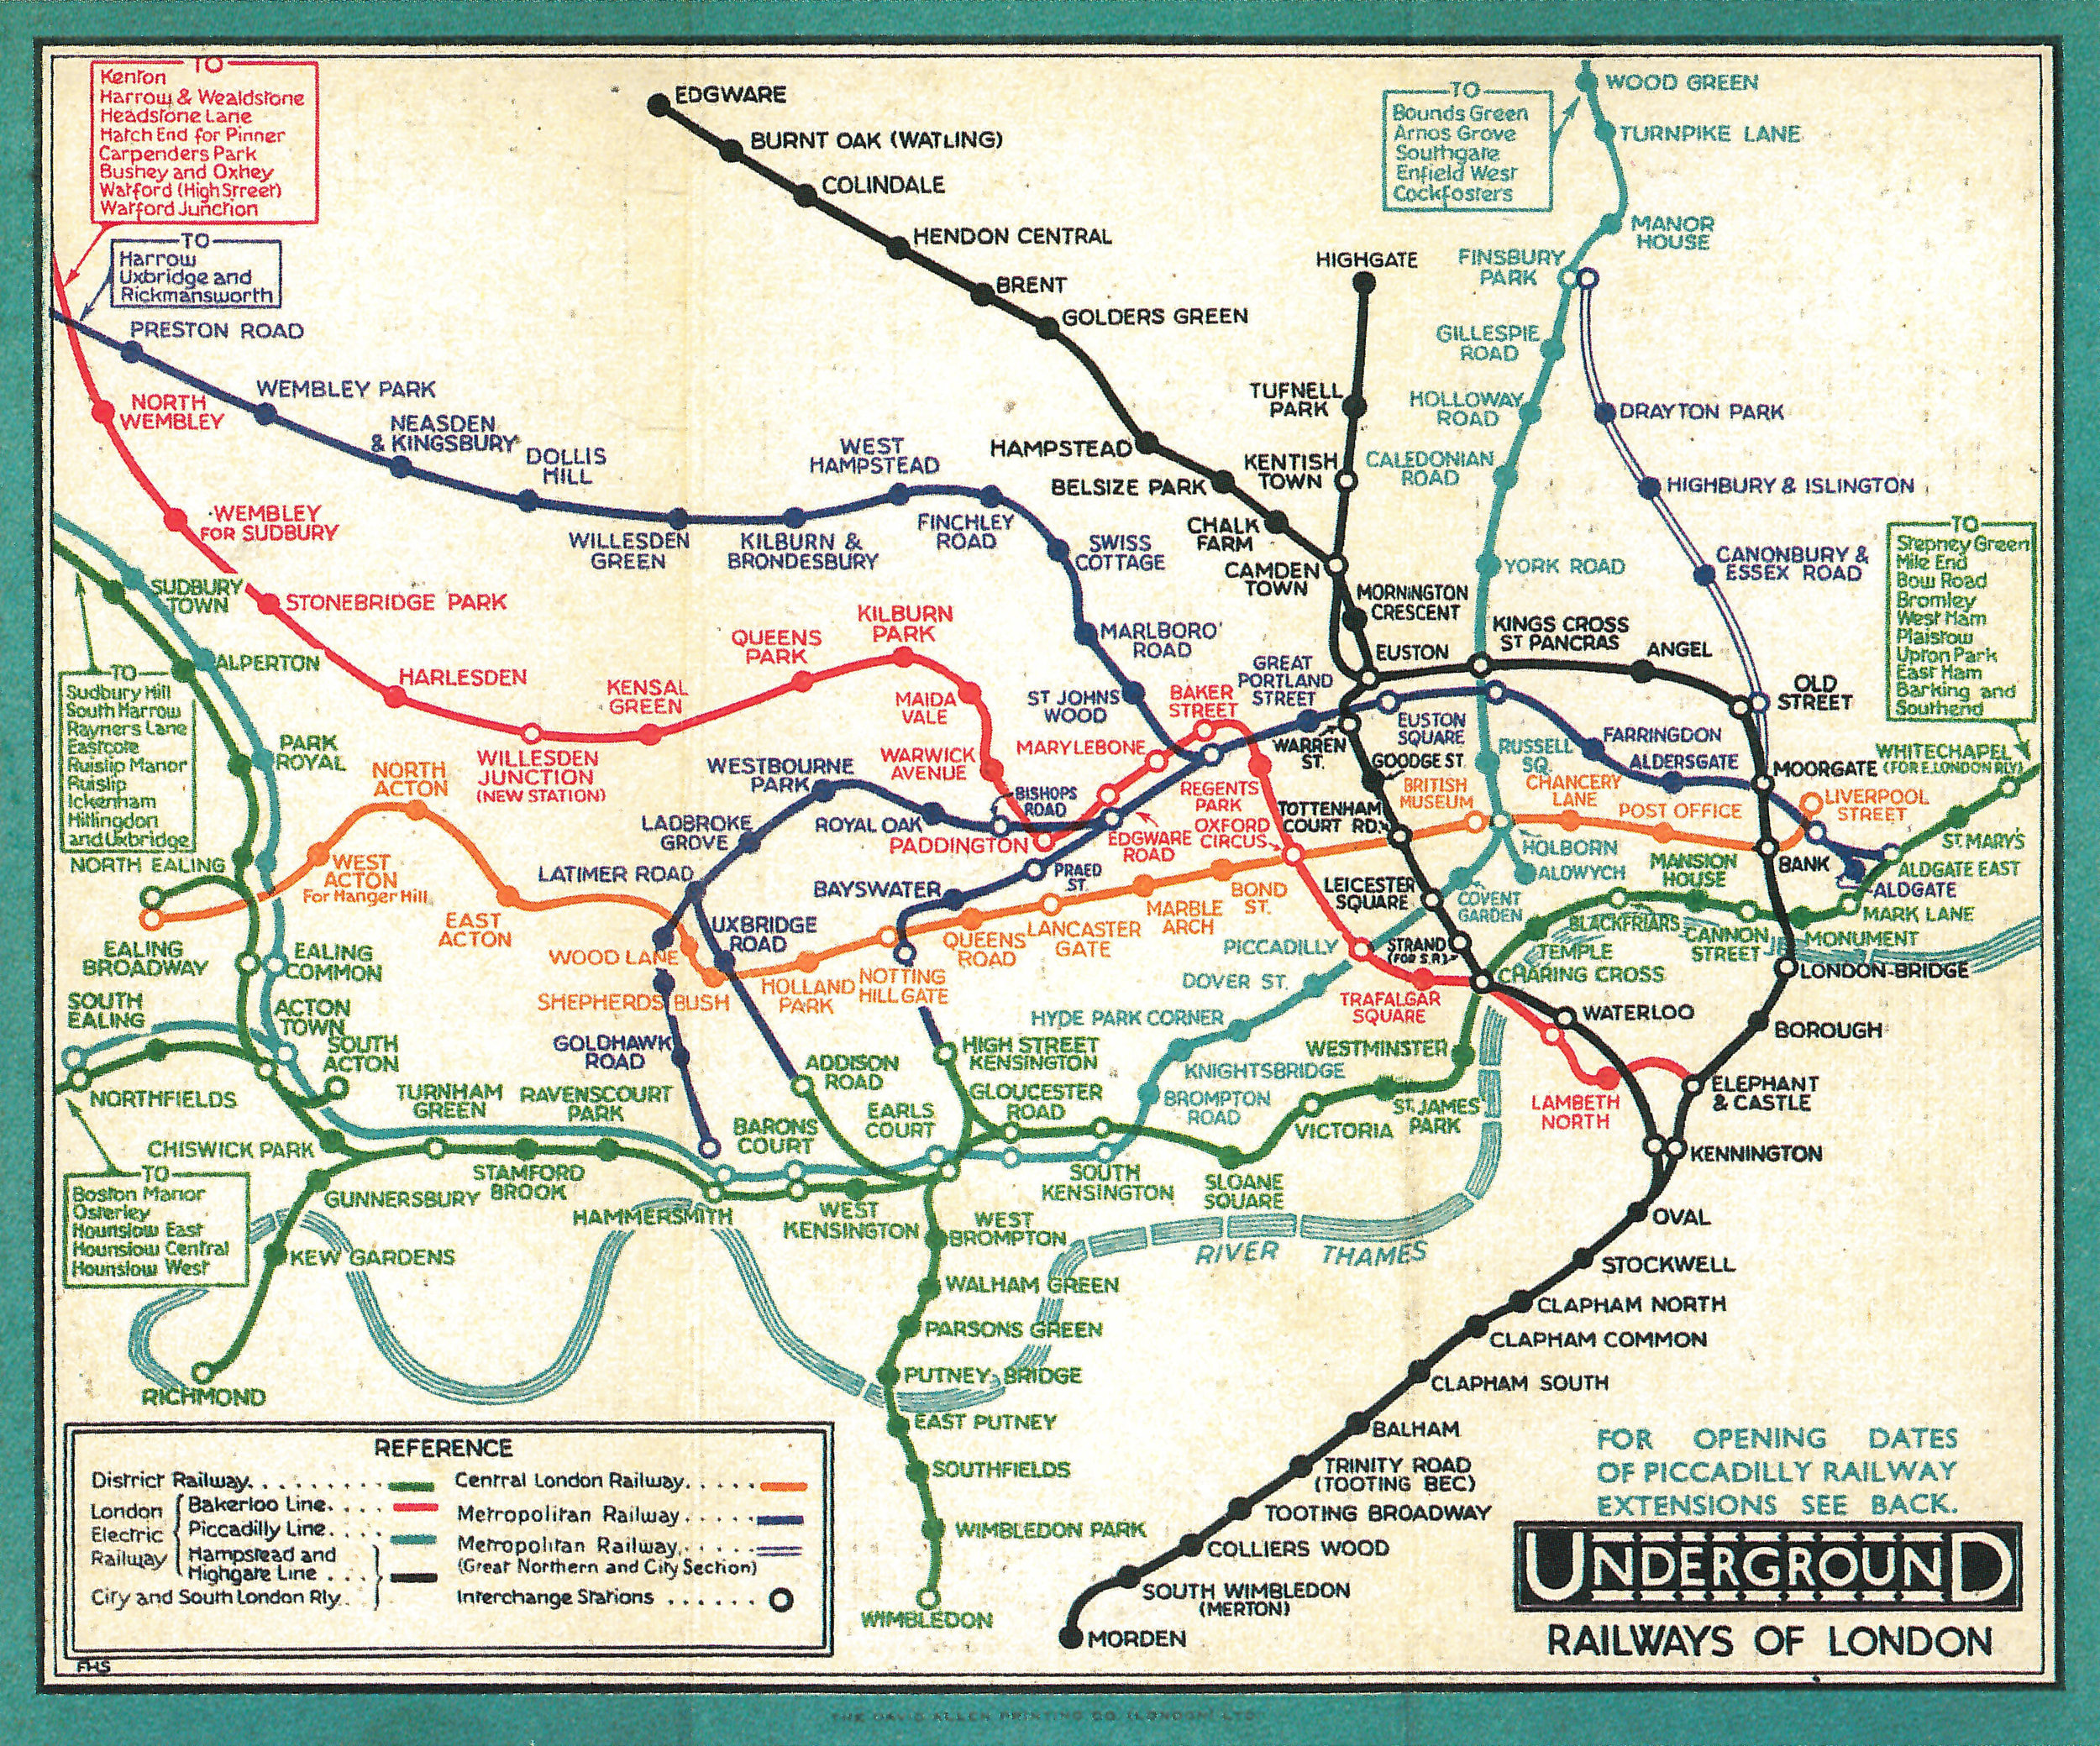 1932-book-london-underground-maps-